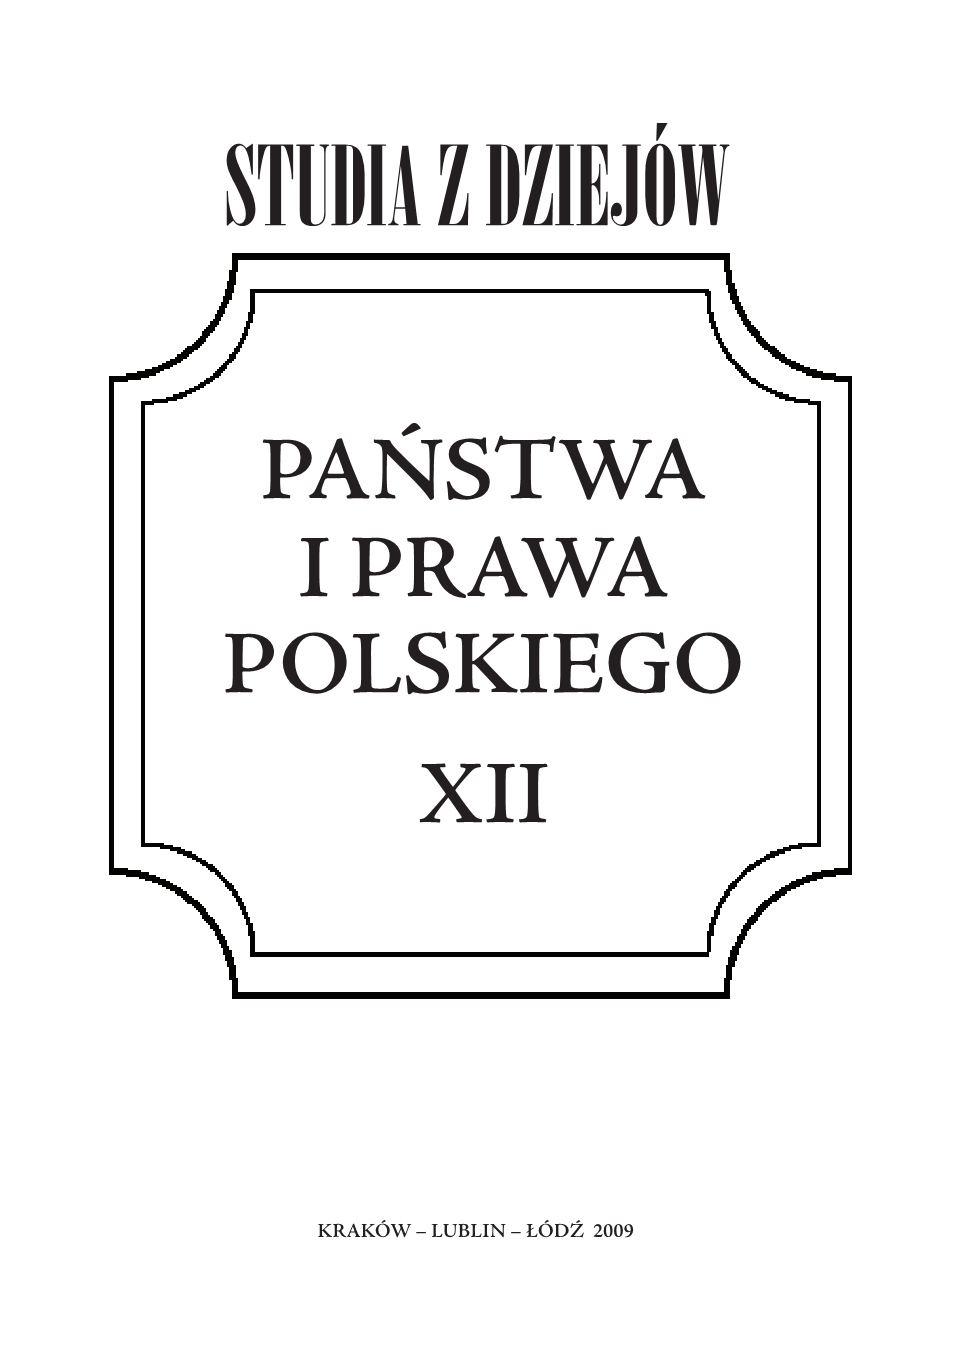 Premiowa Pożyczka Odbudowy Kraju 1946 r.